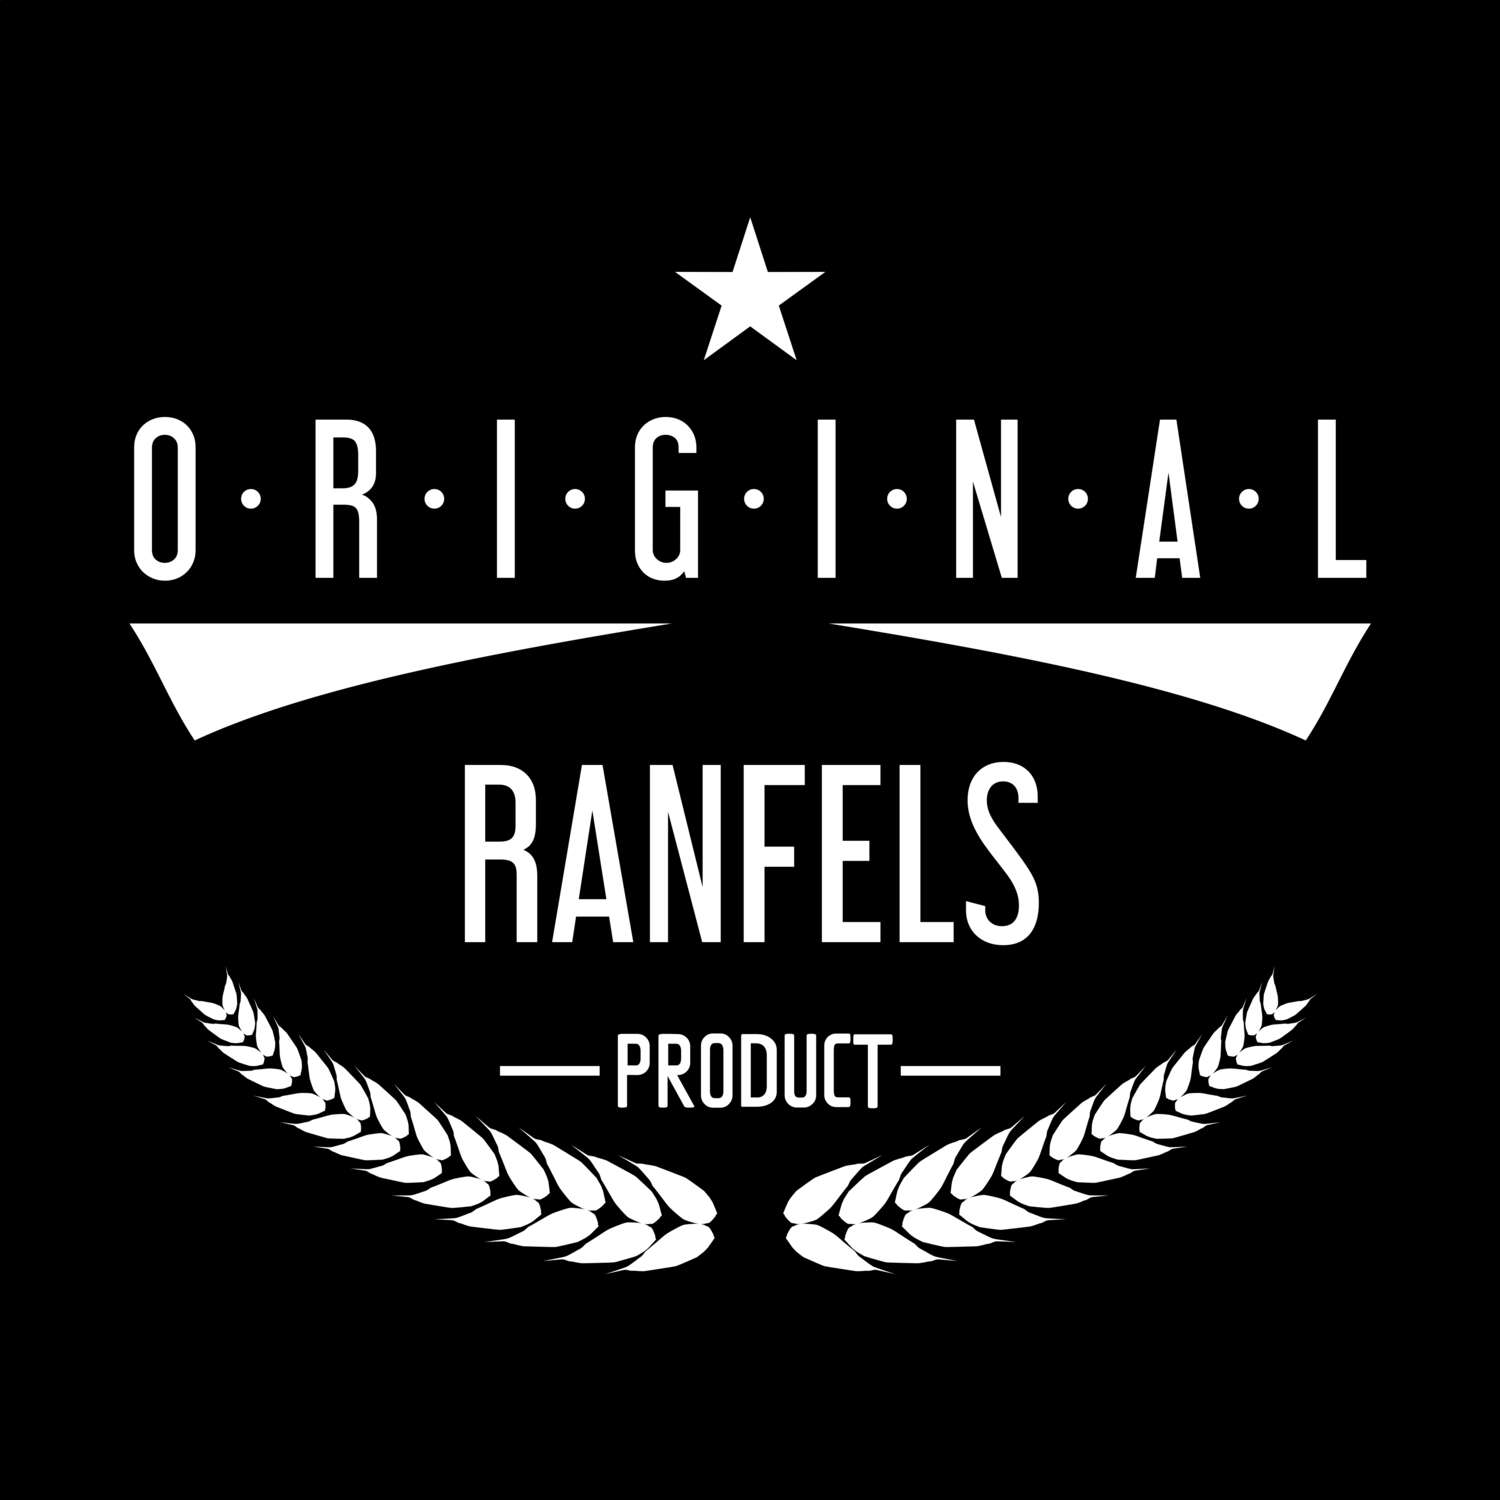 Ranfels T-Shirt »Original Product«